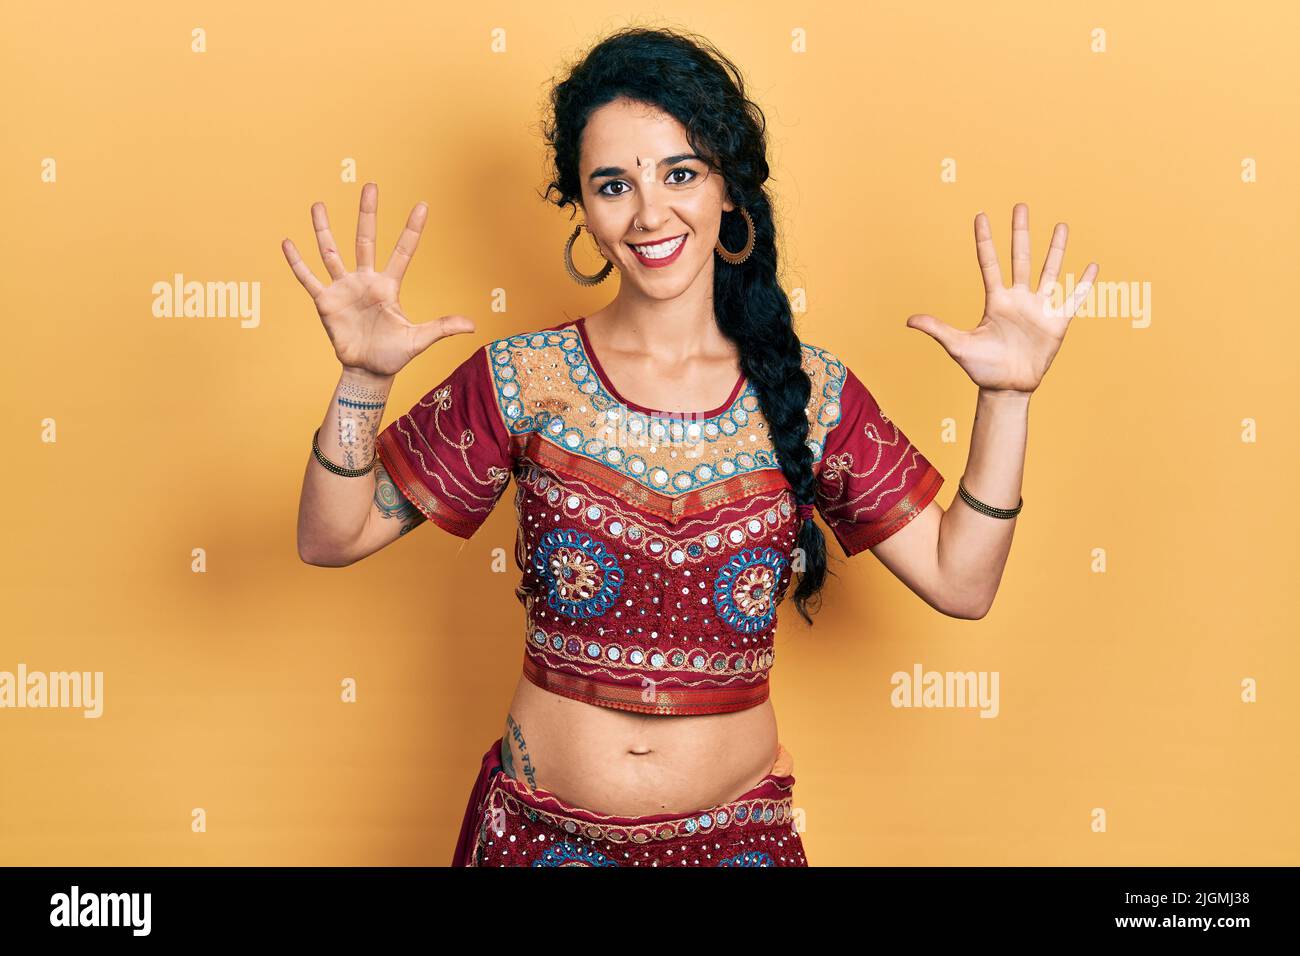 Junge Frau in Bindi- und bollywood-Kleidung zeigt und zeigt mit den Fingern Nummer zehn auf, während sie selbstbewusst und glücklich lächelt. Stockfoto